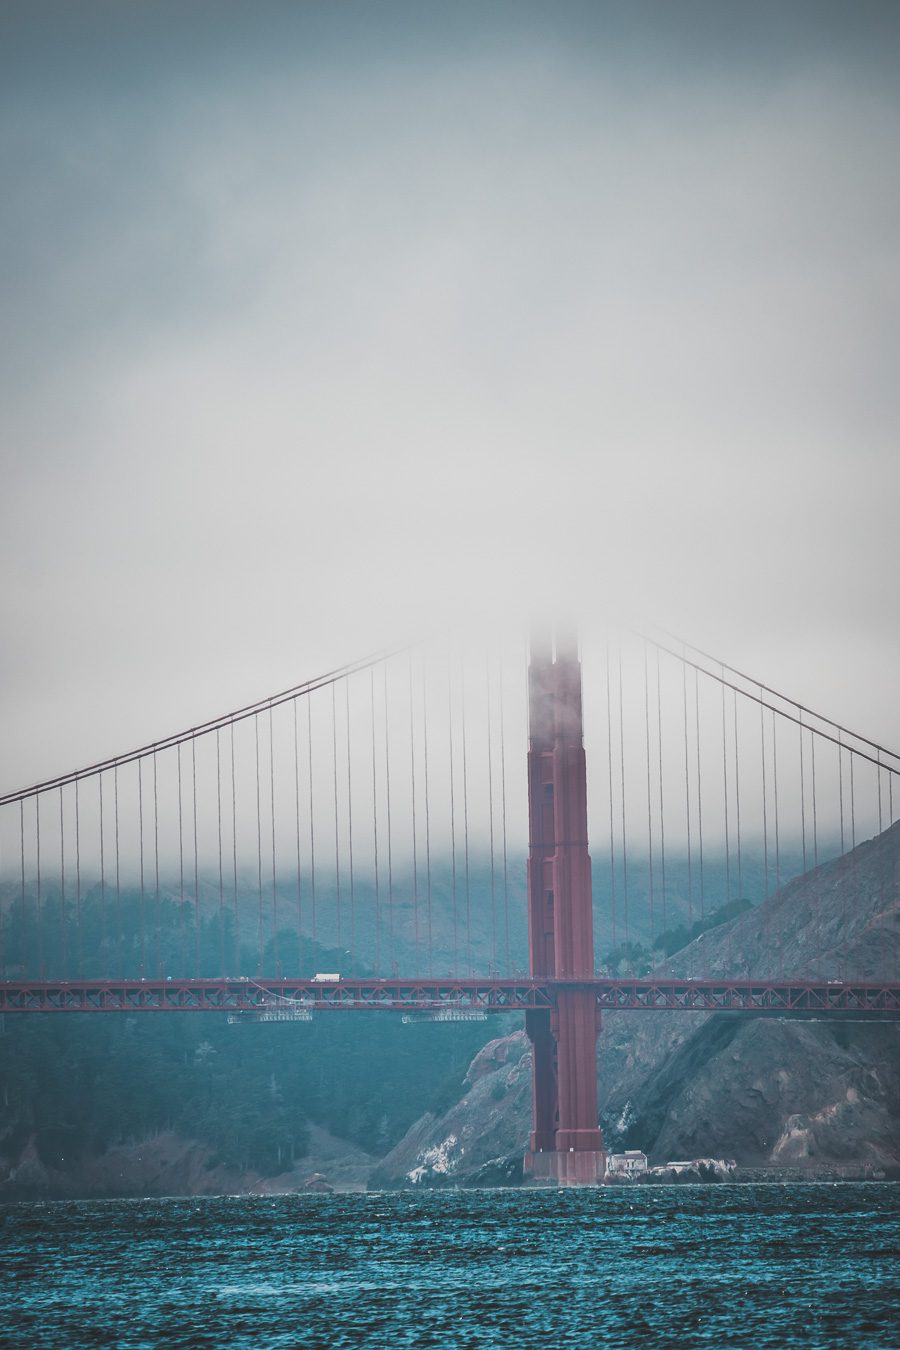 Vous souhaitez visiter San Francisco en 3 jours lors d'un voyage aux Etats-Unis ? Suivez le guide ! Vous trouverez dans cet article les lieux à voir à San Francisco et autres conseils pratiques. San Francisco aesthetic / San Francisco photography / San Francisco city / San francisco things to do in / San francisco voyage / Carnet de voyage San Francisco / Visite San Francisco / Golden Gate bridge / Etats Unis aesthetic / Etats Unis paysages / Etats Unis voyage / Voyage aux Etats Unis